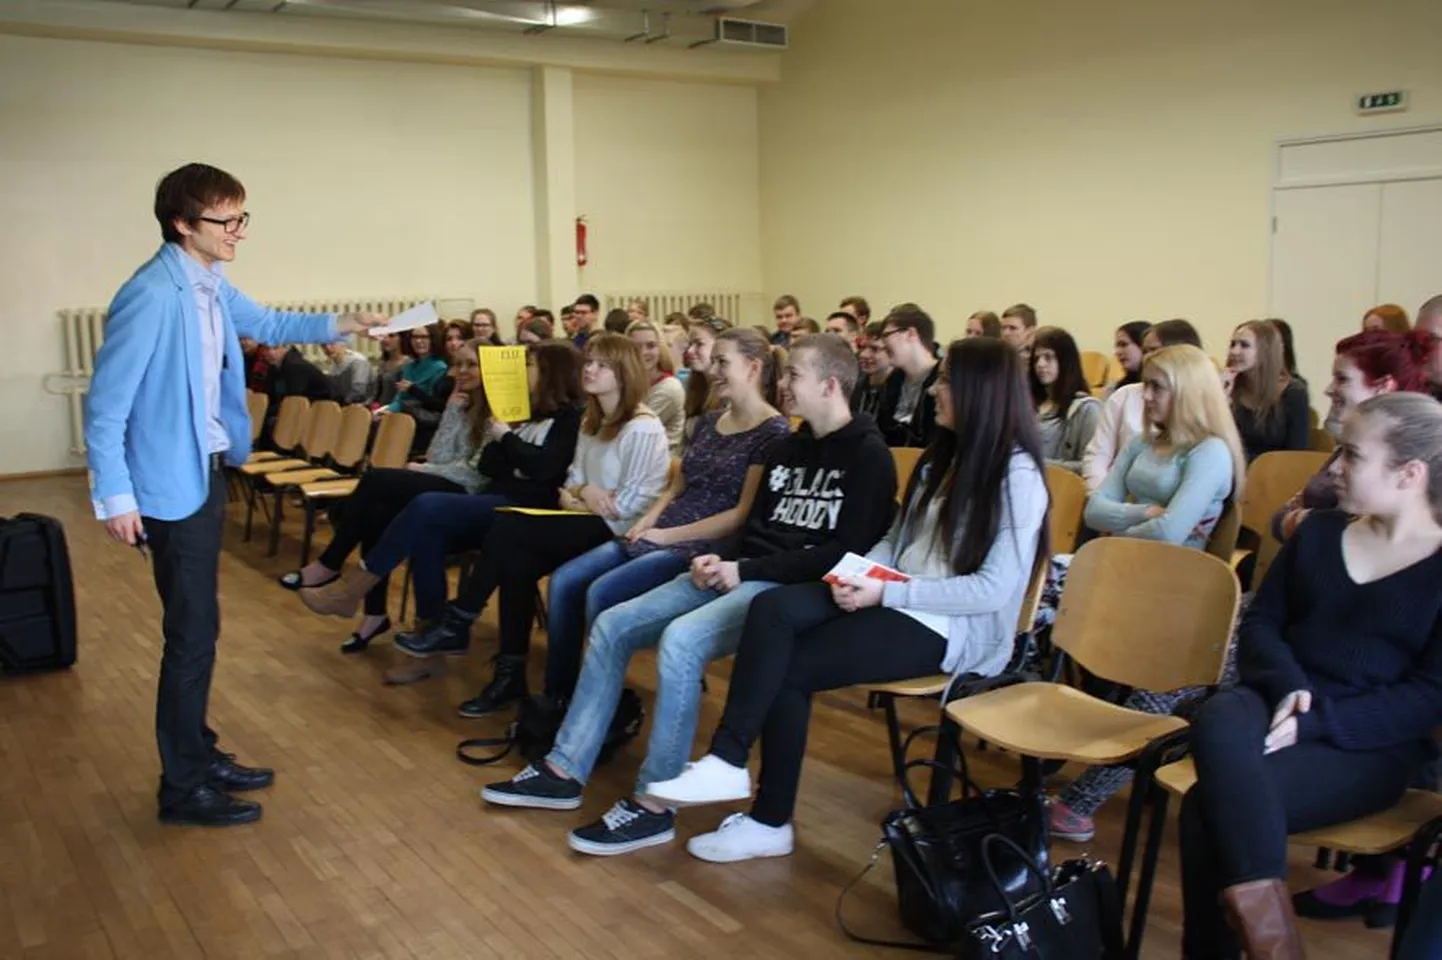 Koolitaja Harald Lepisk pidas Türi ühisgümnaasiumi avatud uste päeval tulevastele gümnasistidele inspireeriva loengu teemal «Tee seda, mida armastad ja tee seda tihti!».